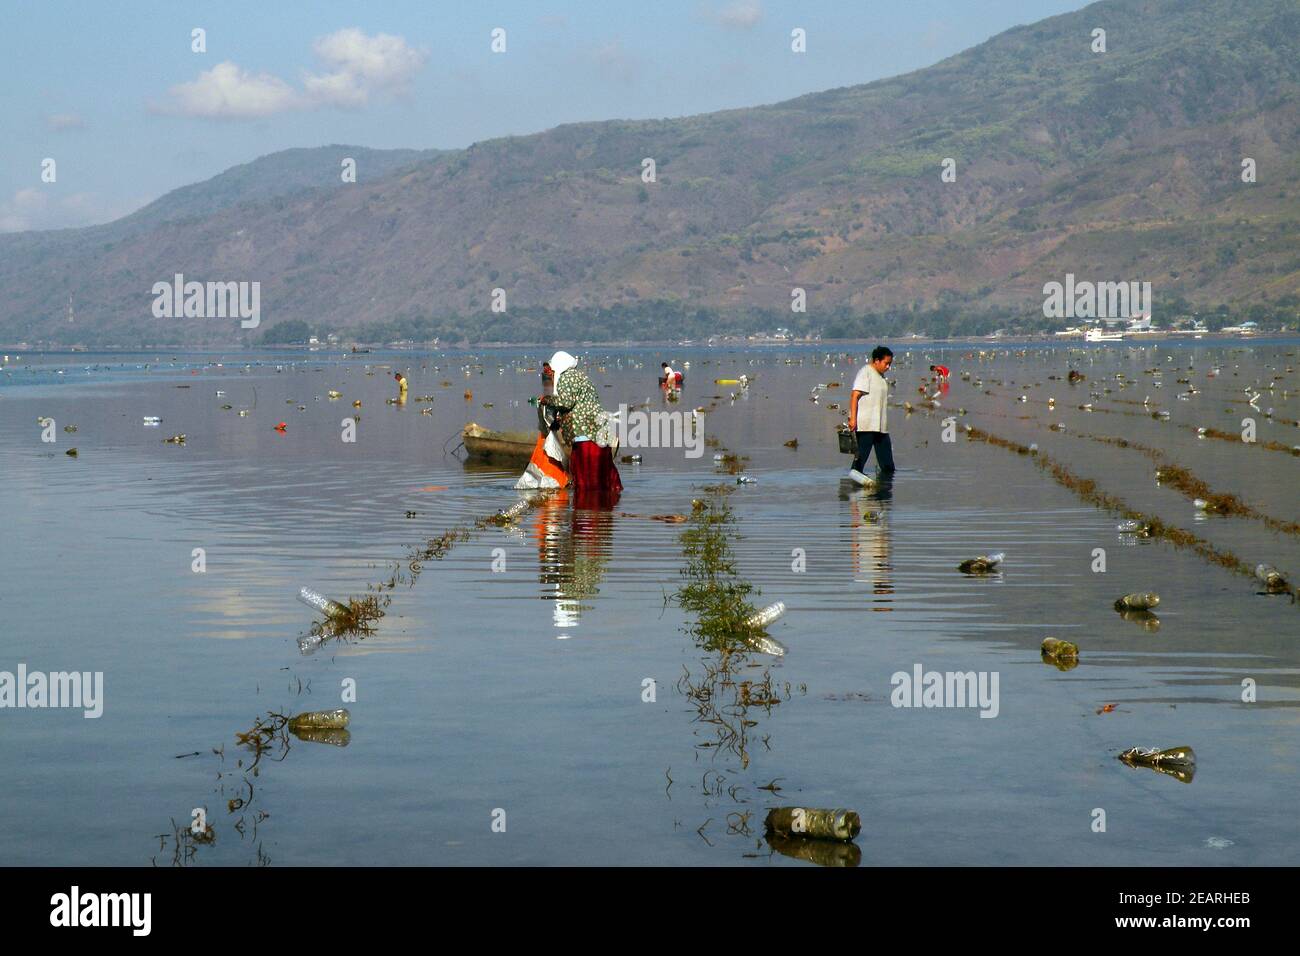 Cultivation and harvest of agar agar algae, Island Alor, Indonesia Stock Photo